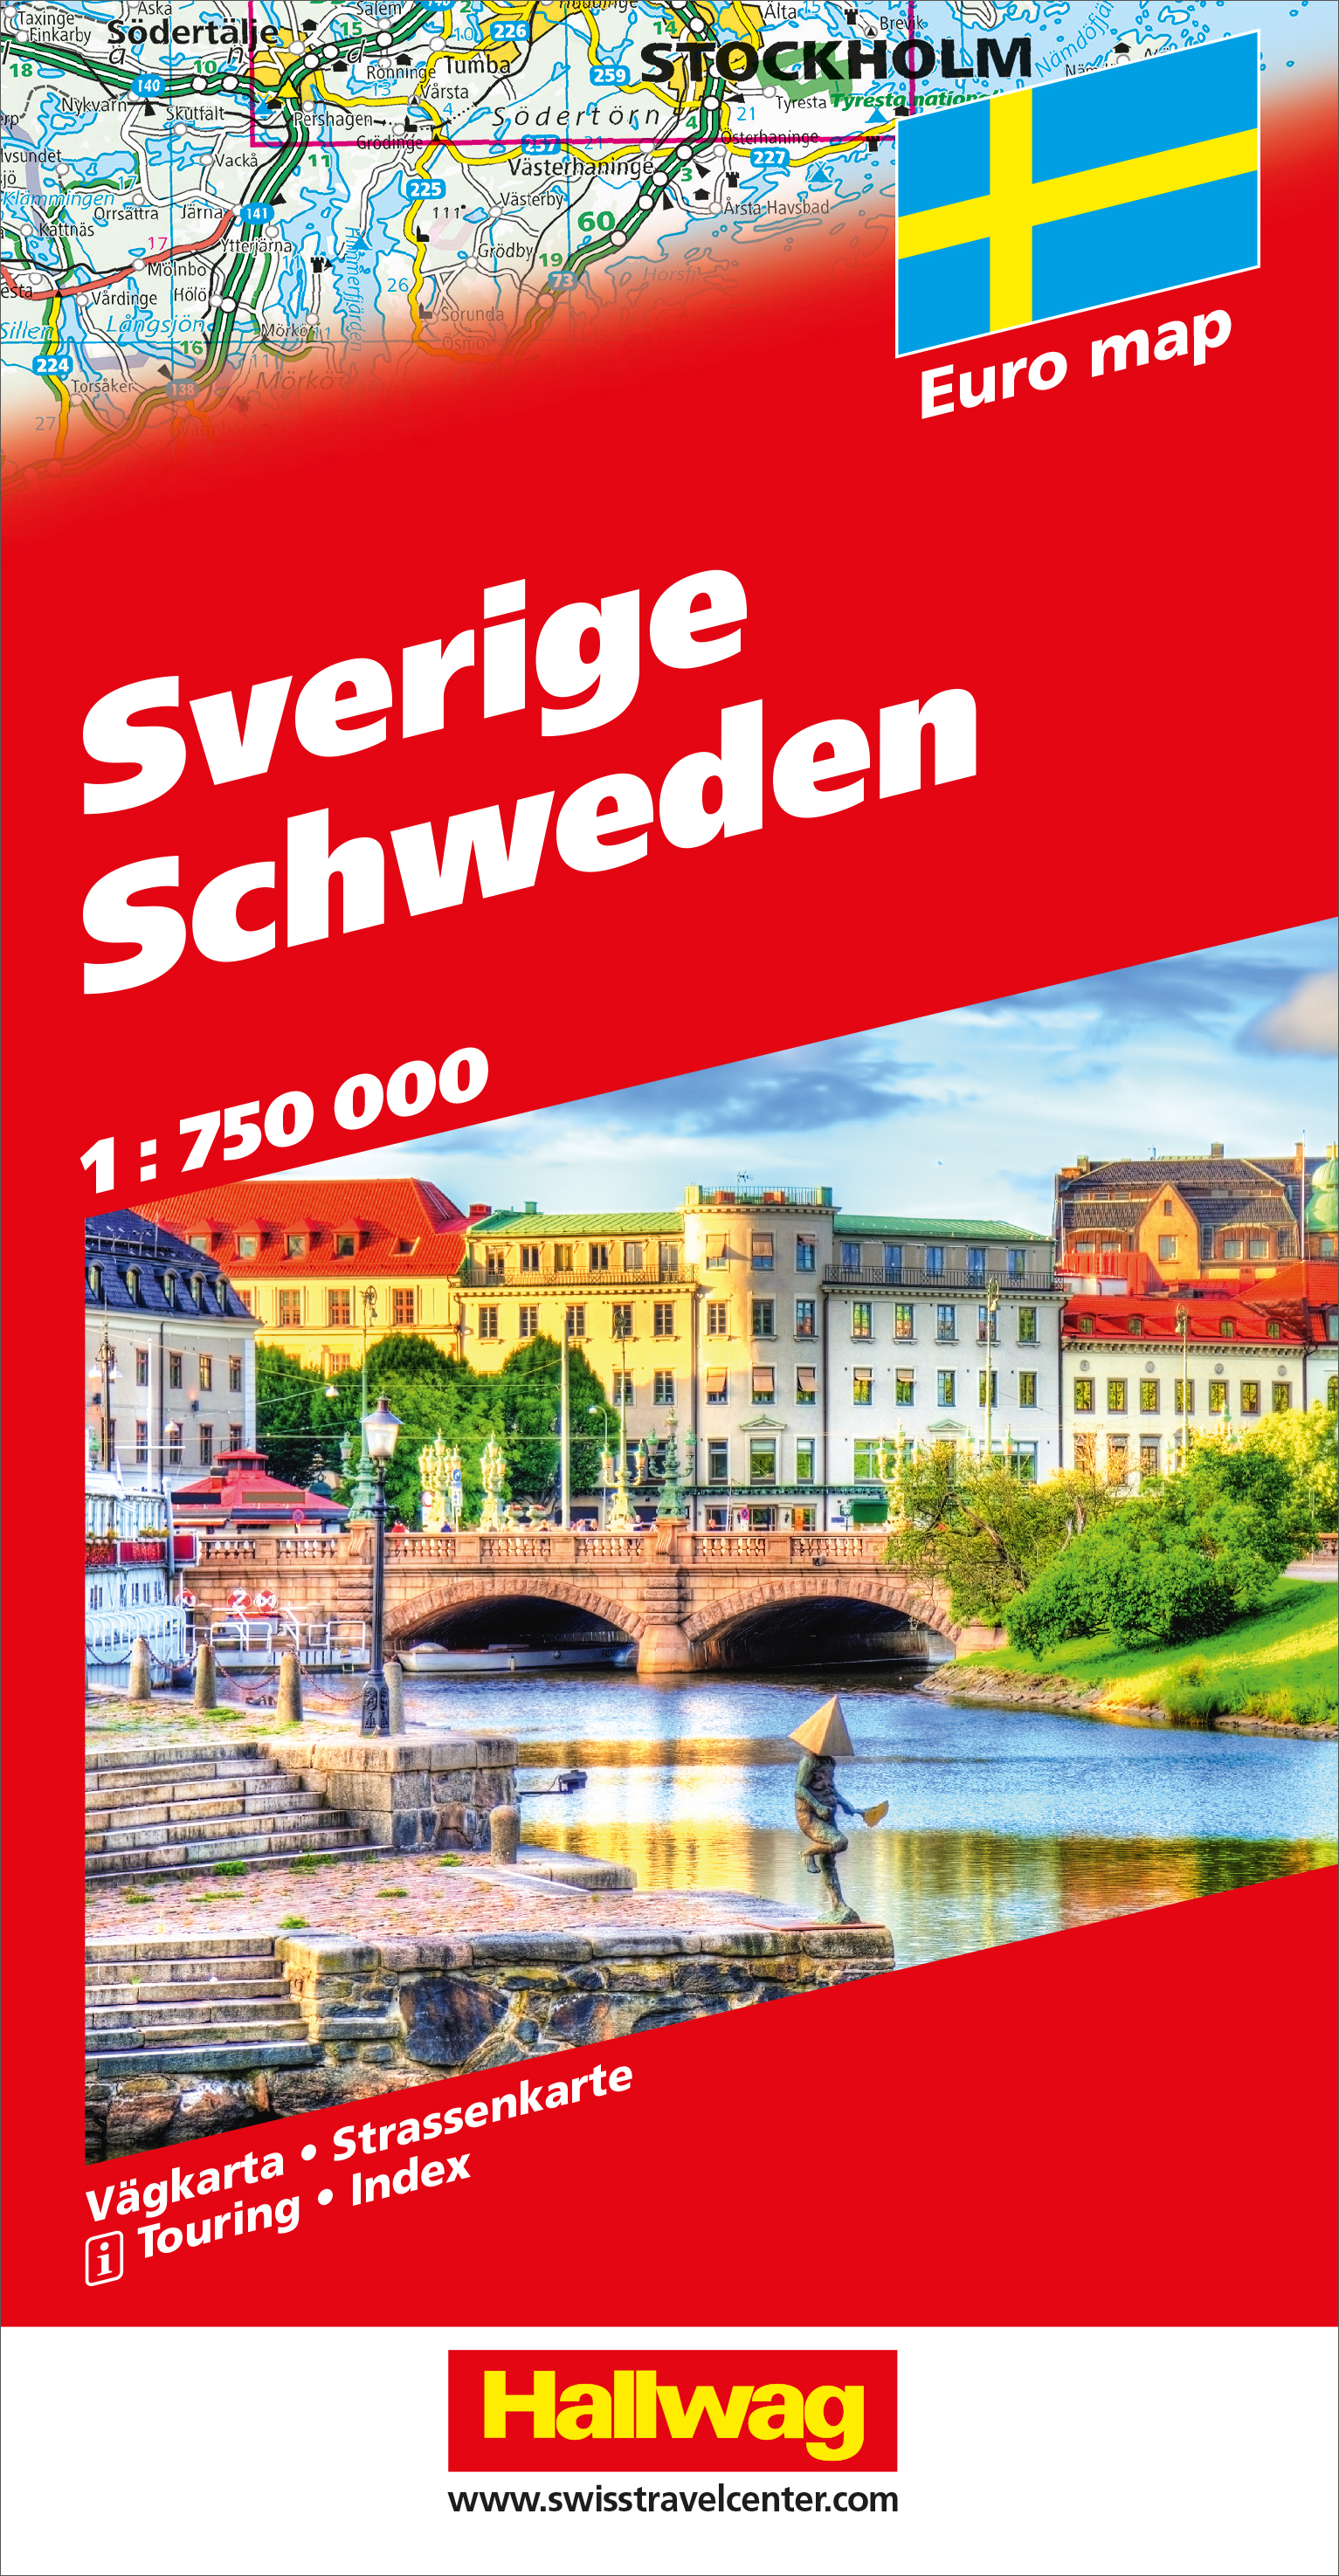 HALLWAG Strassenkarte 978-3-8283-0924-1 Schweden (Dis) 1:750'000